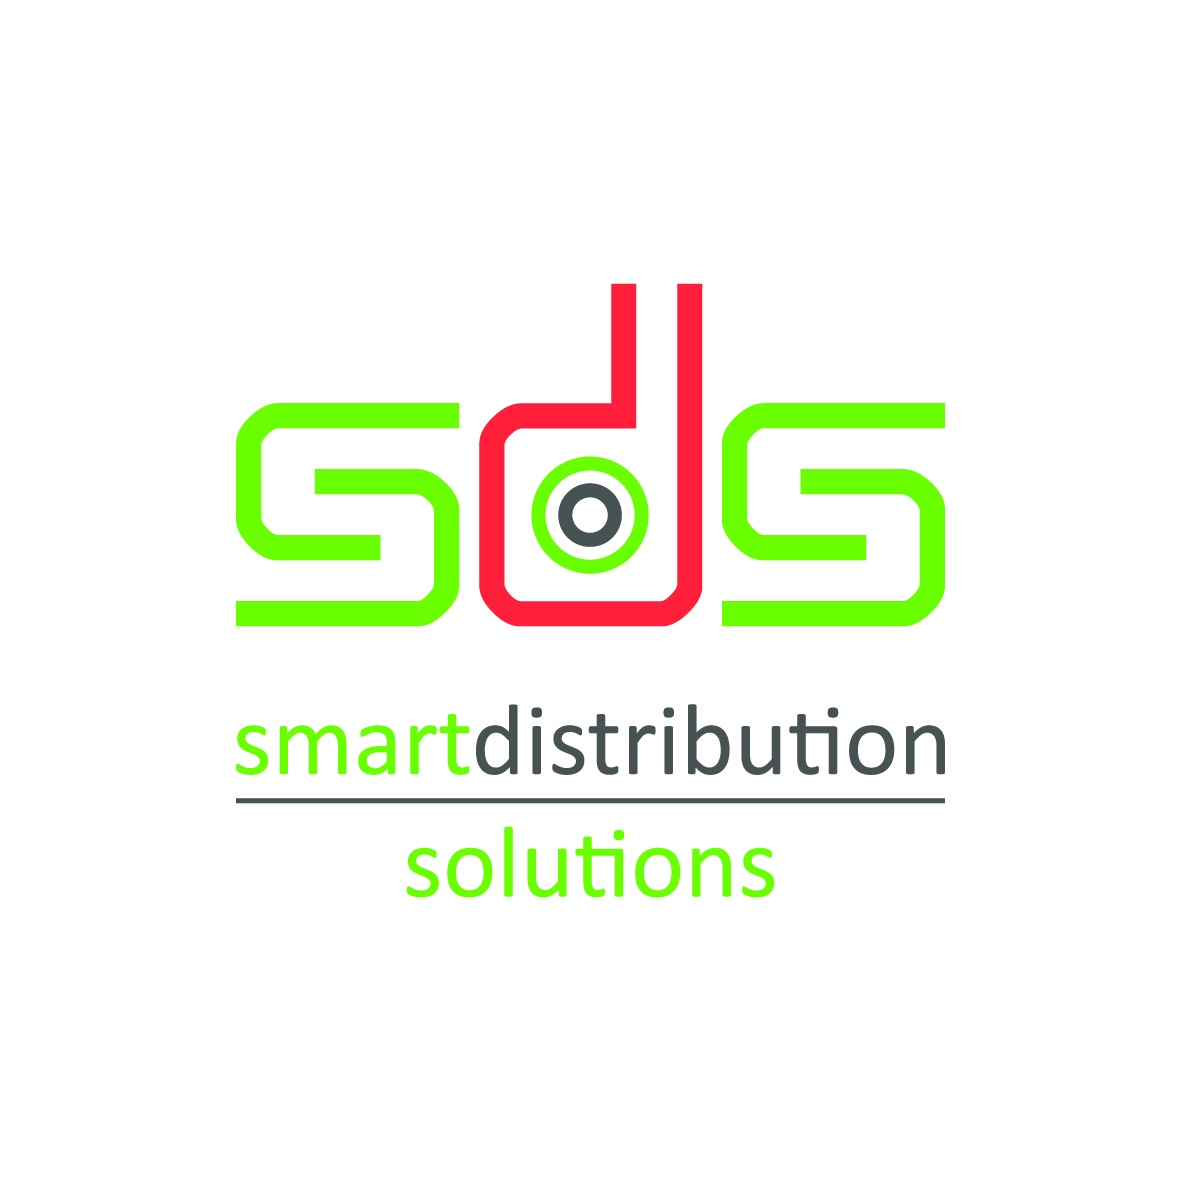 SDS logo v04 FIN hi res CMYK 300dpi 13-08-2012.jpg